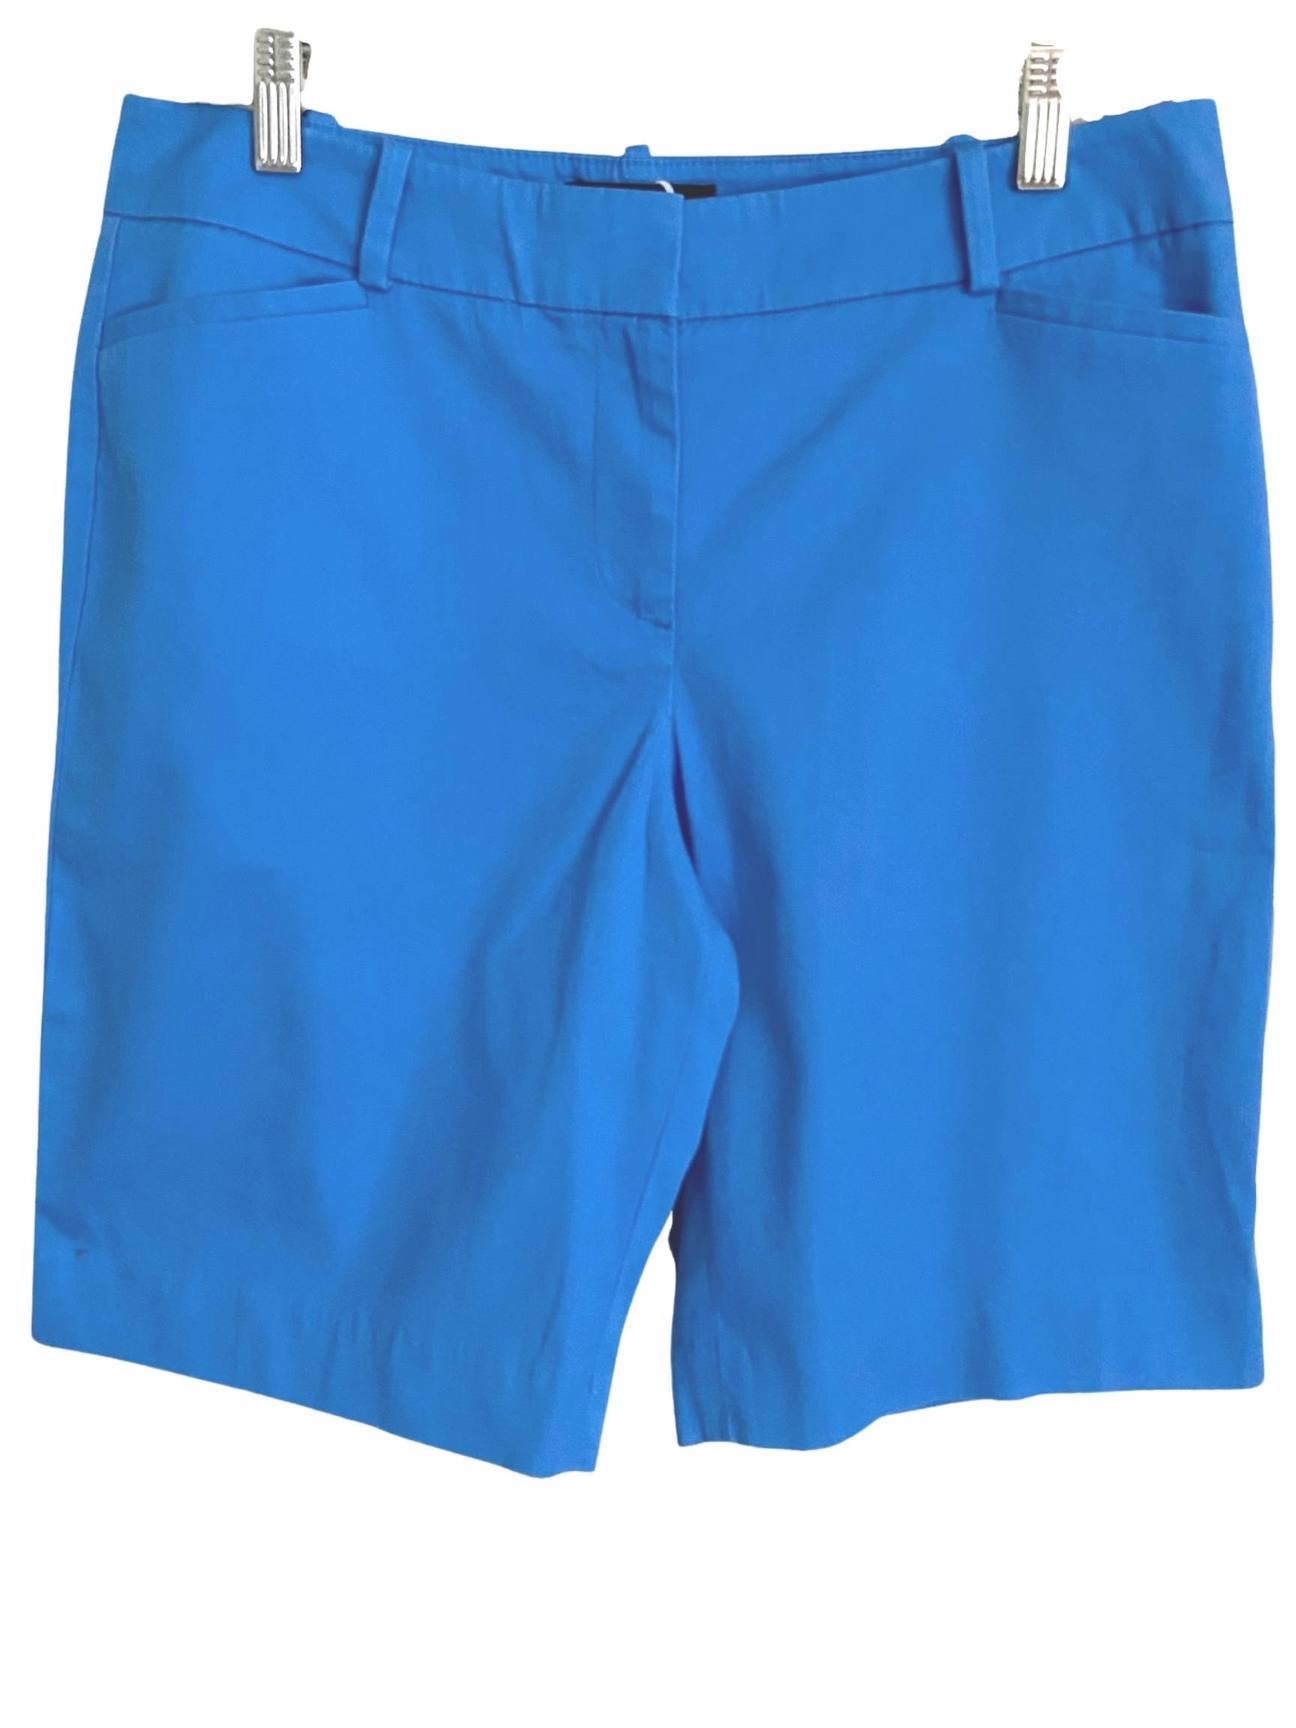 Light Summer TALBOTS blue shorts